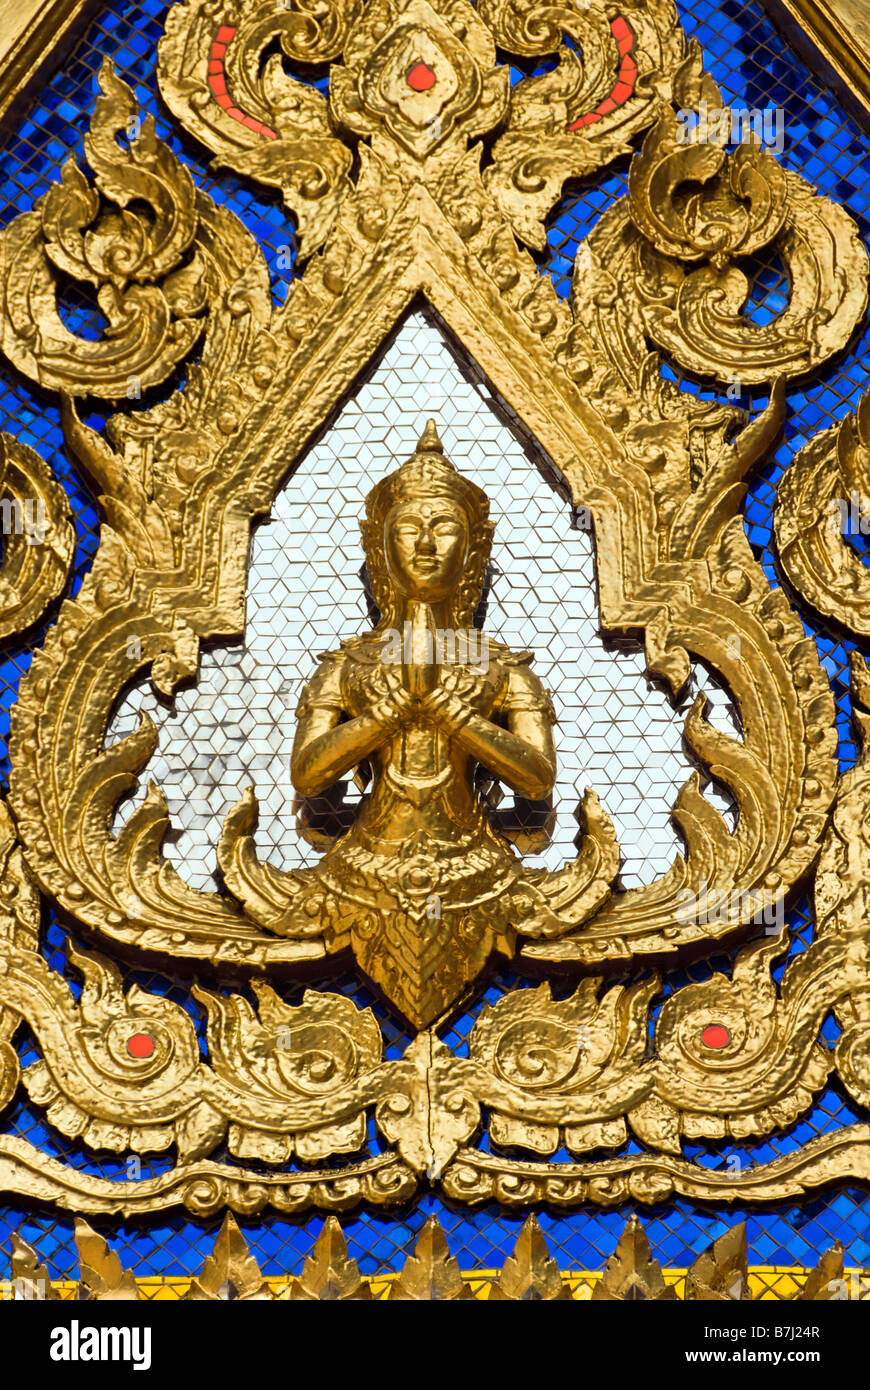 Détail en miroir avec Bouddha dans un temple de pignon - Wat Phra Kaew et le Grand Palais dans le centre de Bangkok en Thaïlande Banque D'Images